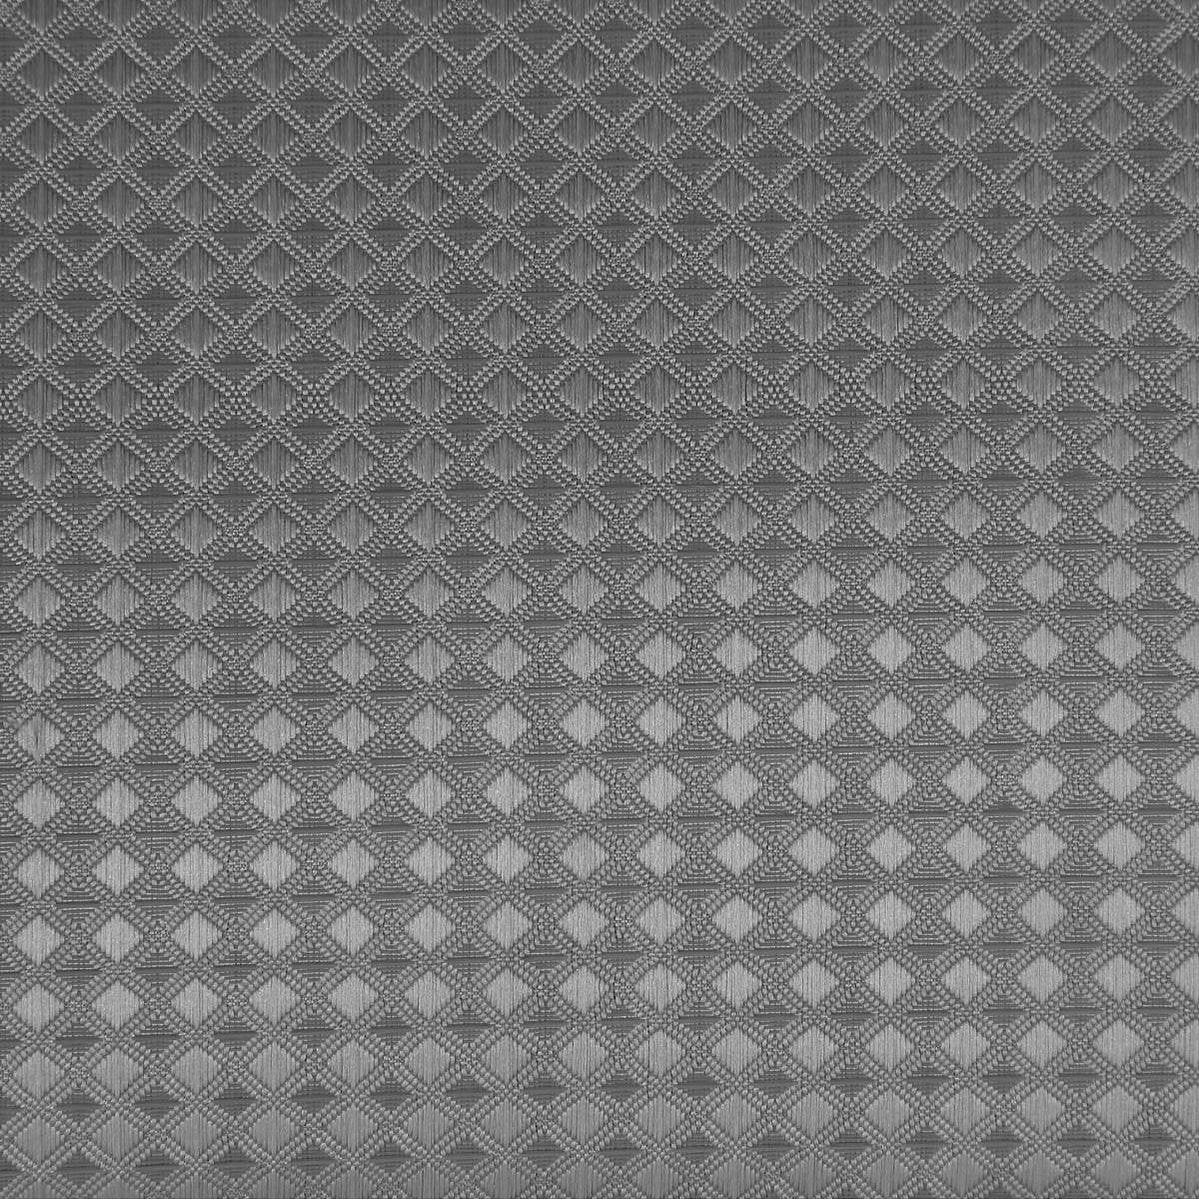 Atmosphera douchegordijn honinggraat effect grijs - 180 x 200 Cm - Met 12 ringen inbegrepen - Polyes